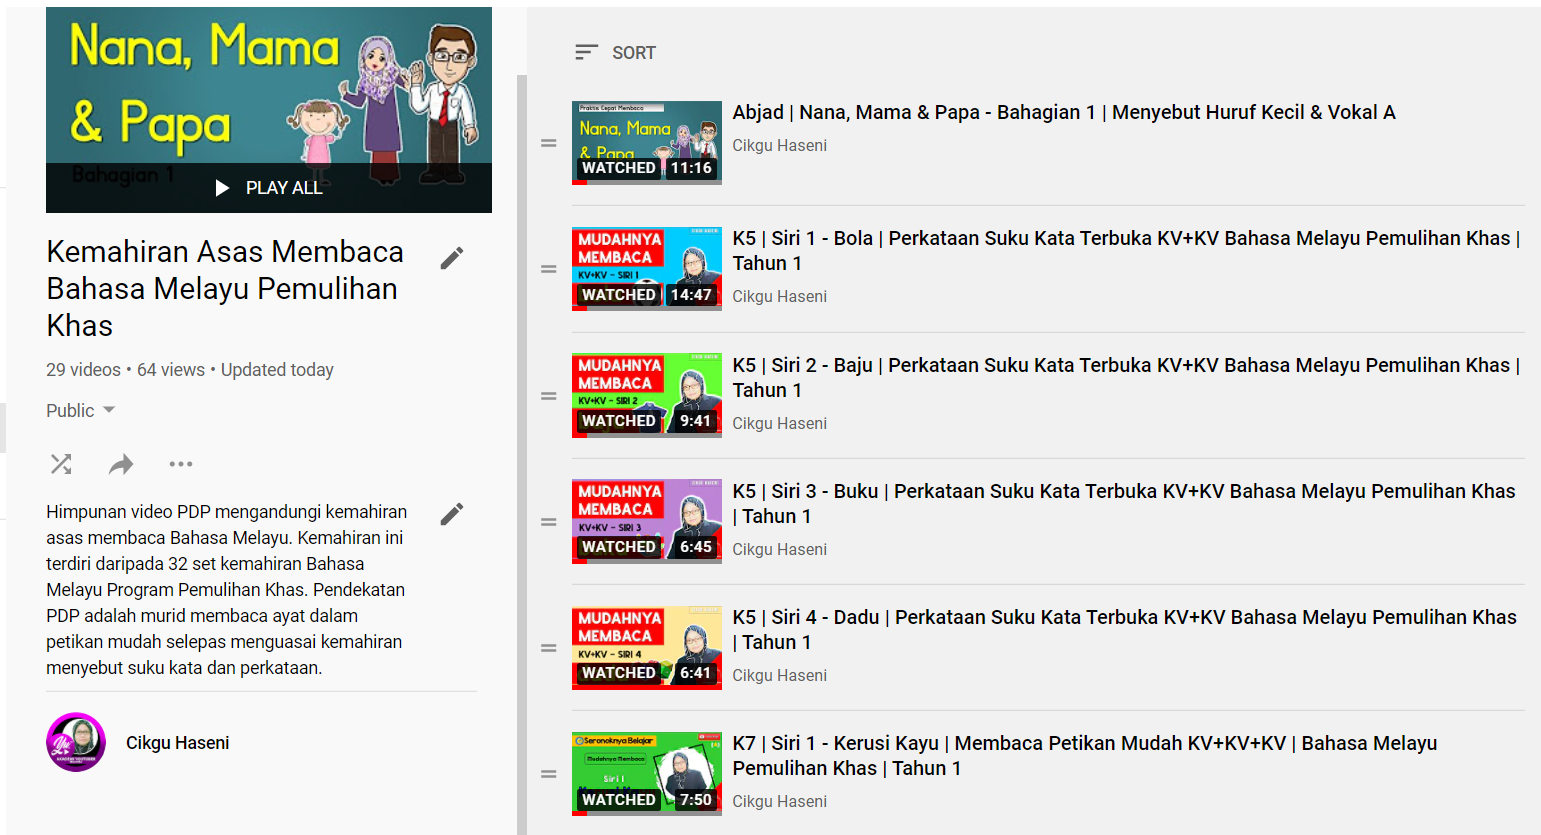 Cikgu Hijau Koleksi Video Pdp 32 Set Kemahiran Asas Membaca Bahasa Melayu Program Pemulihan Khas